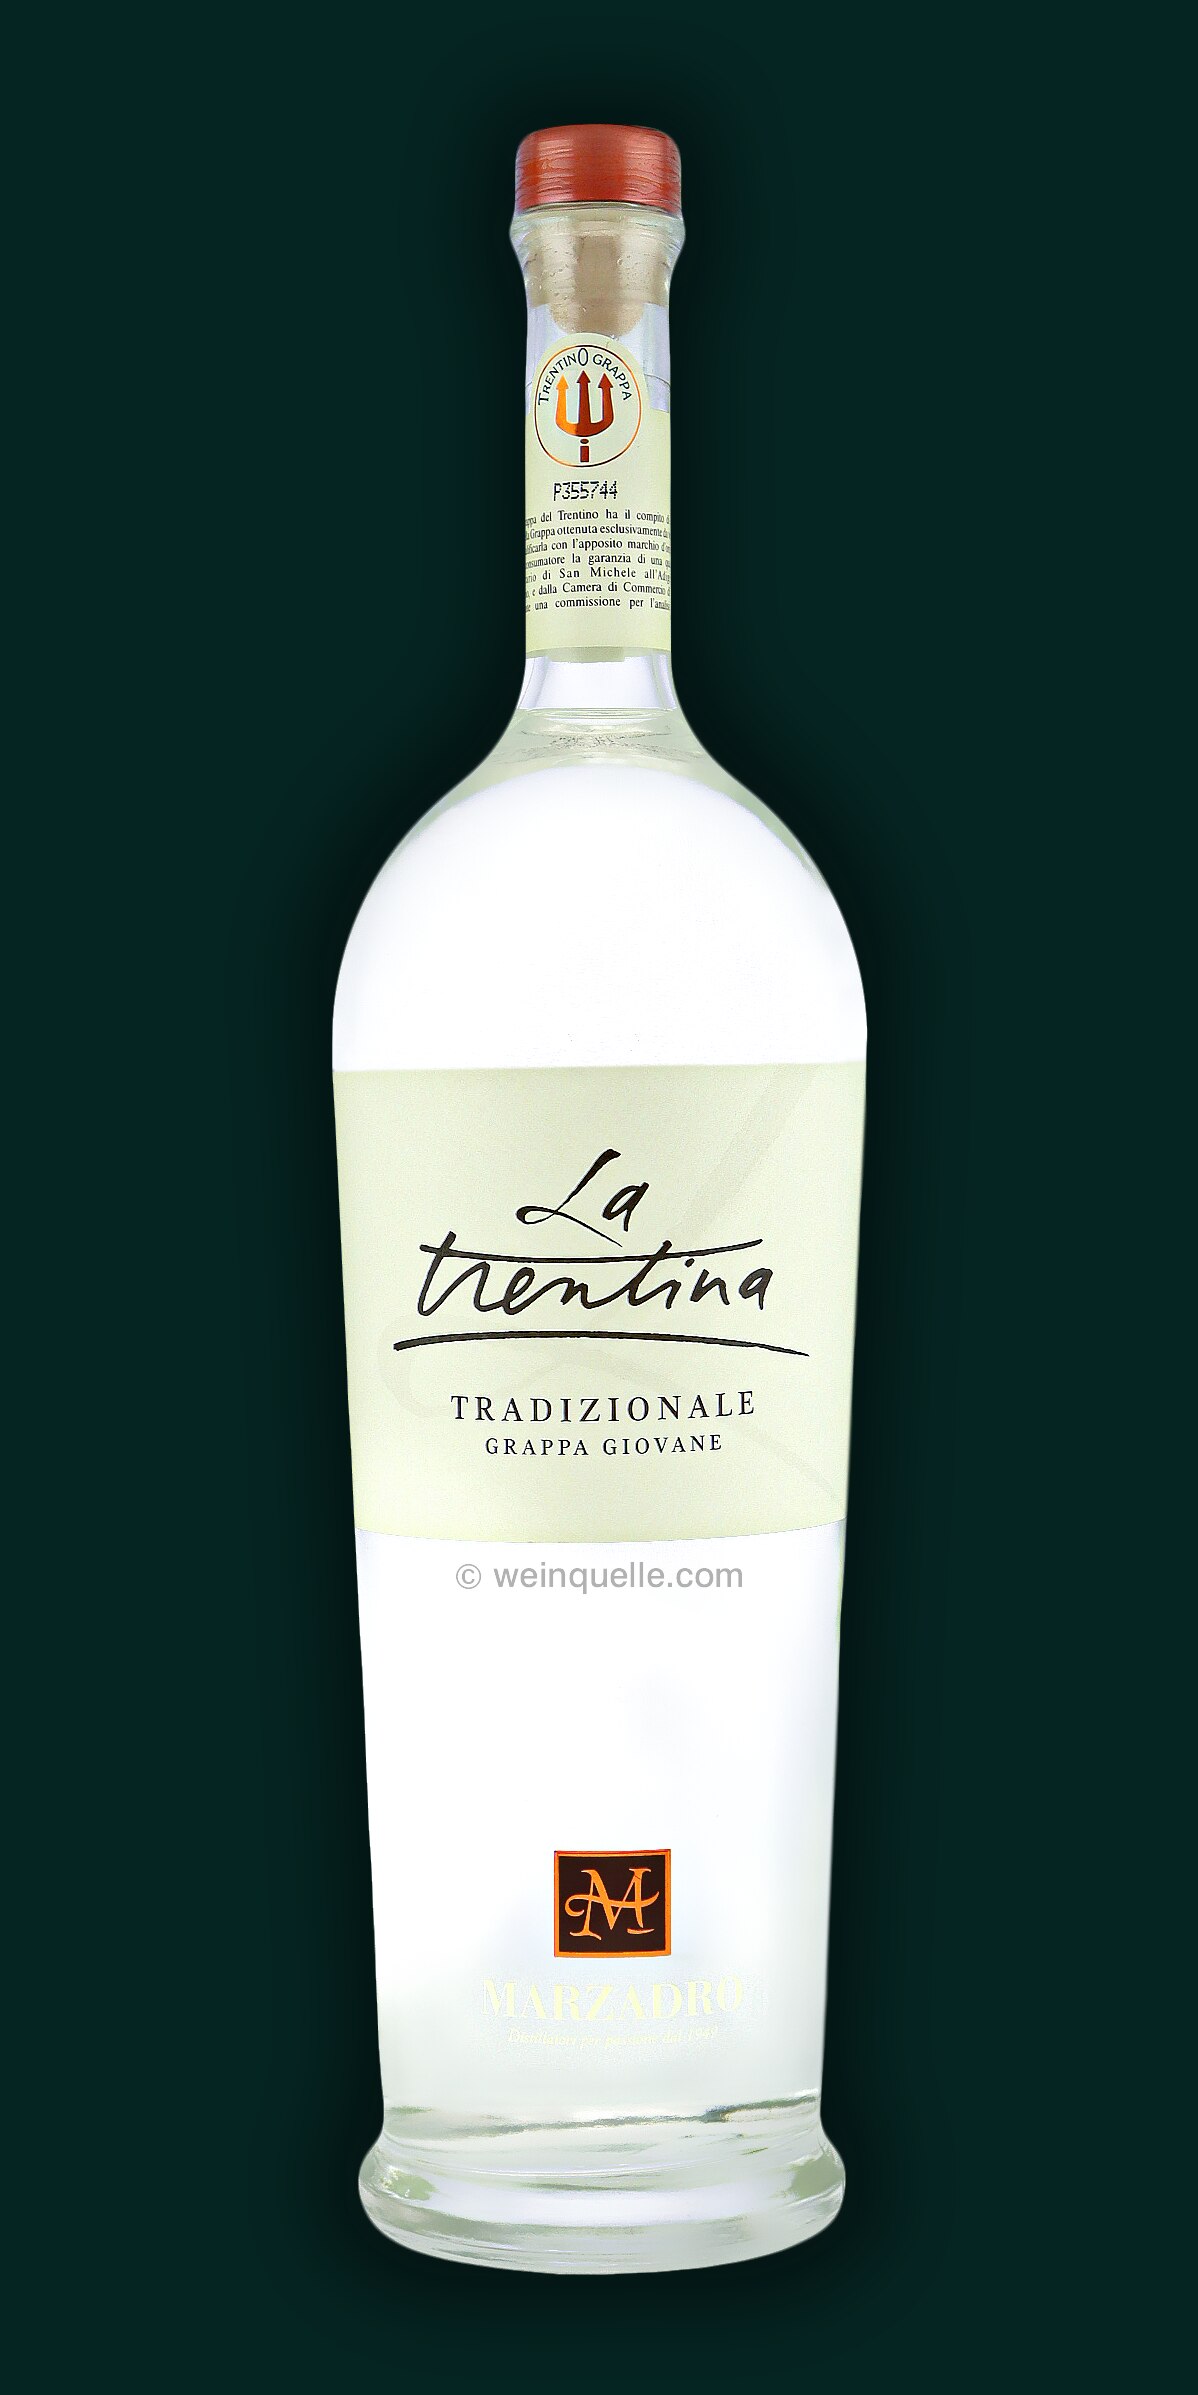 Liter, € Weinquelle Tradizionale 51,95 Grappa 1,5 La Marzadro Trentina - Lühmann